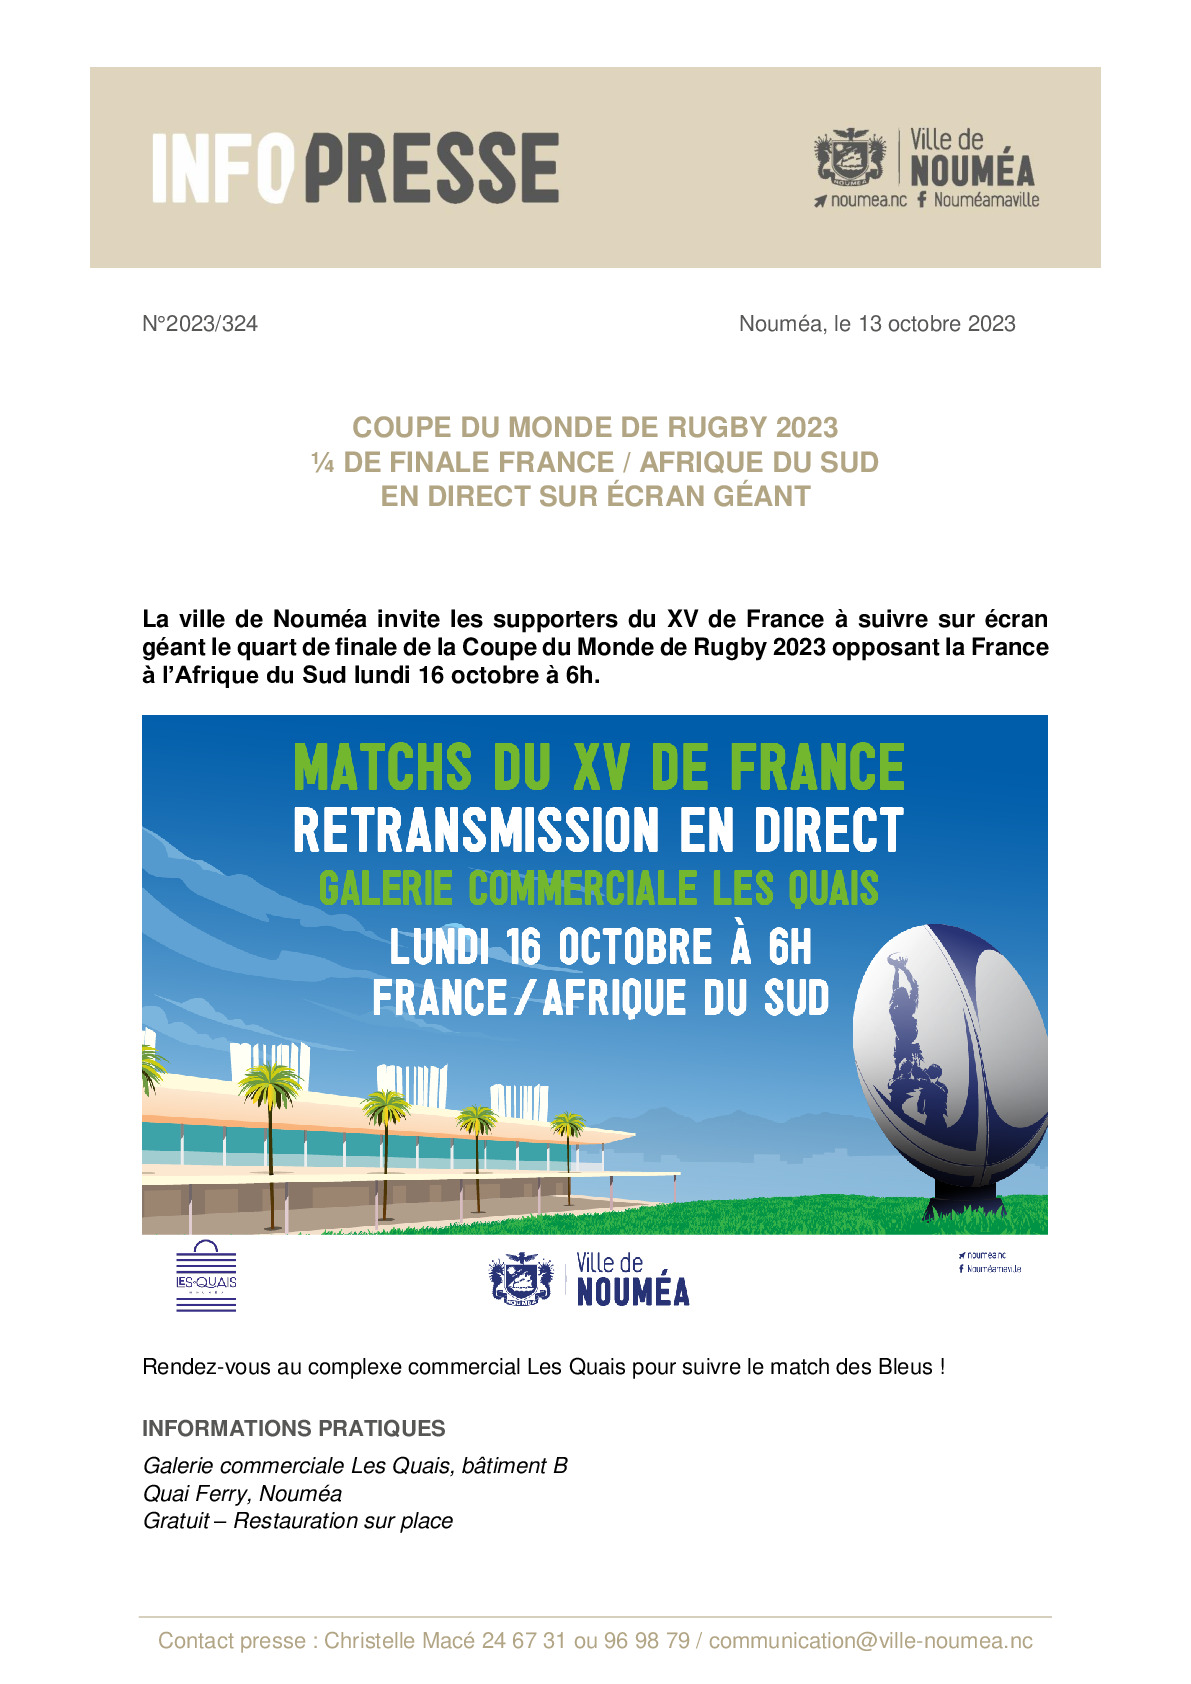 IP  324 Ecran géant - Coupe du monde de rugby.pdf